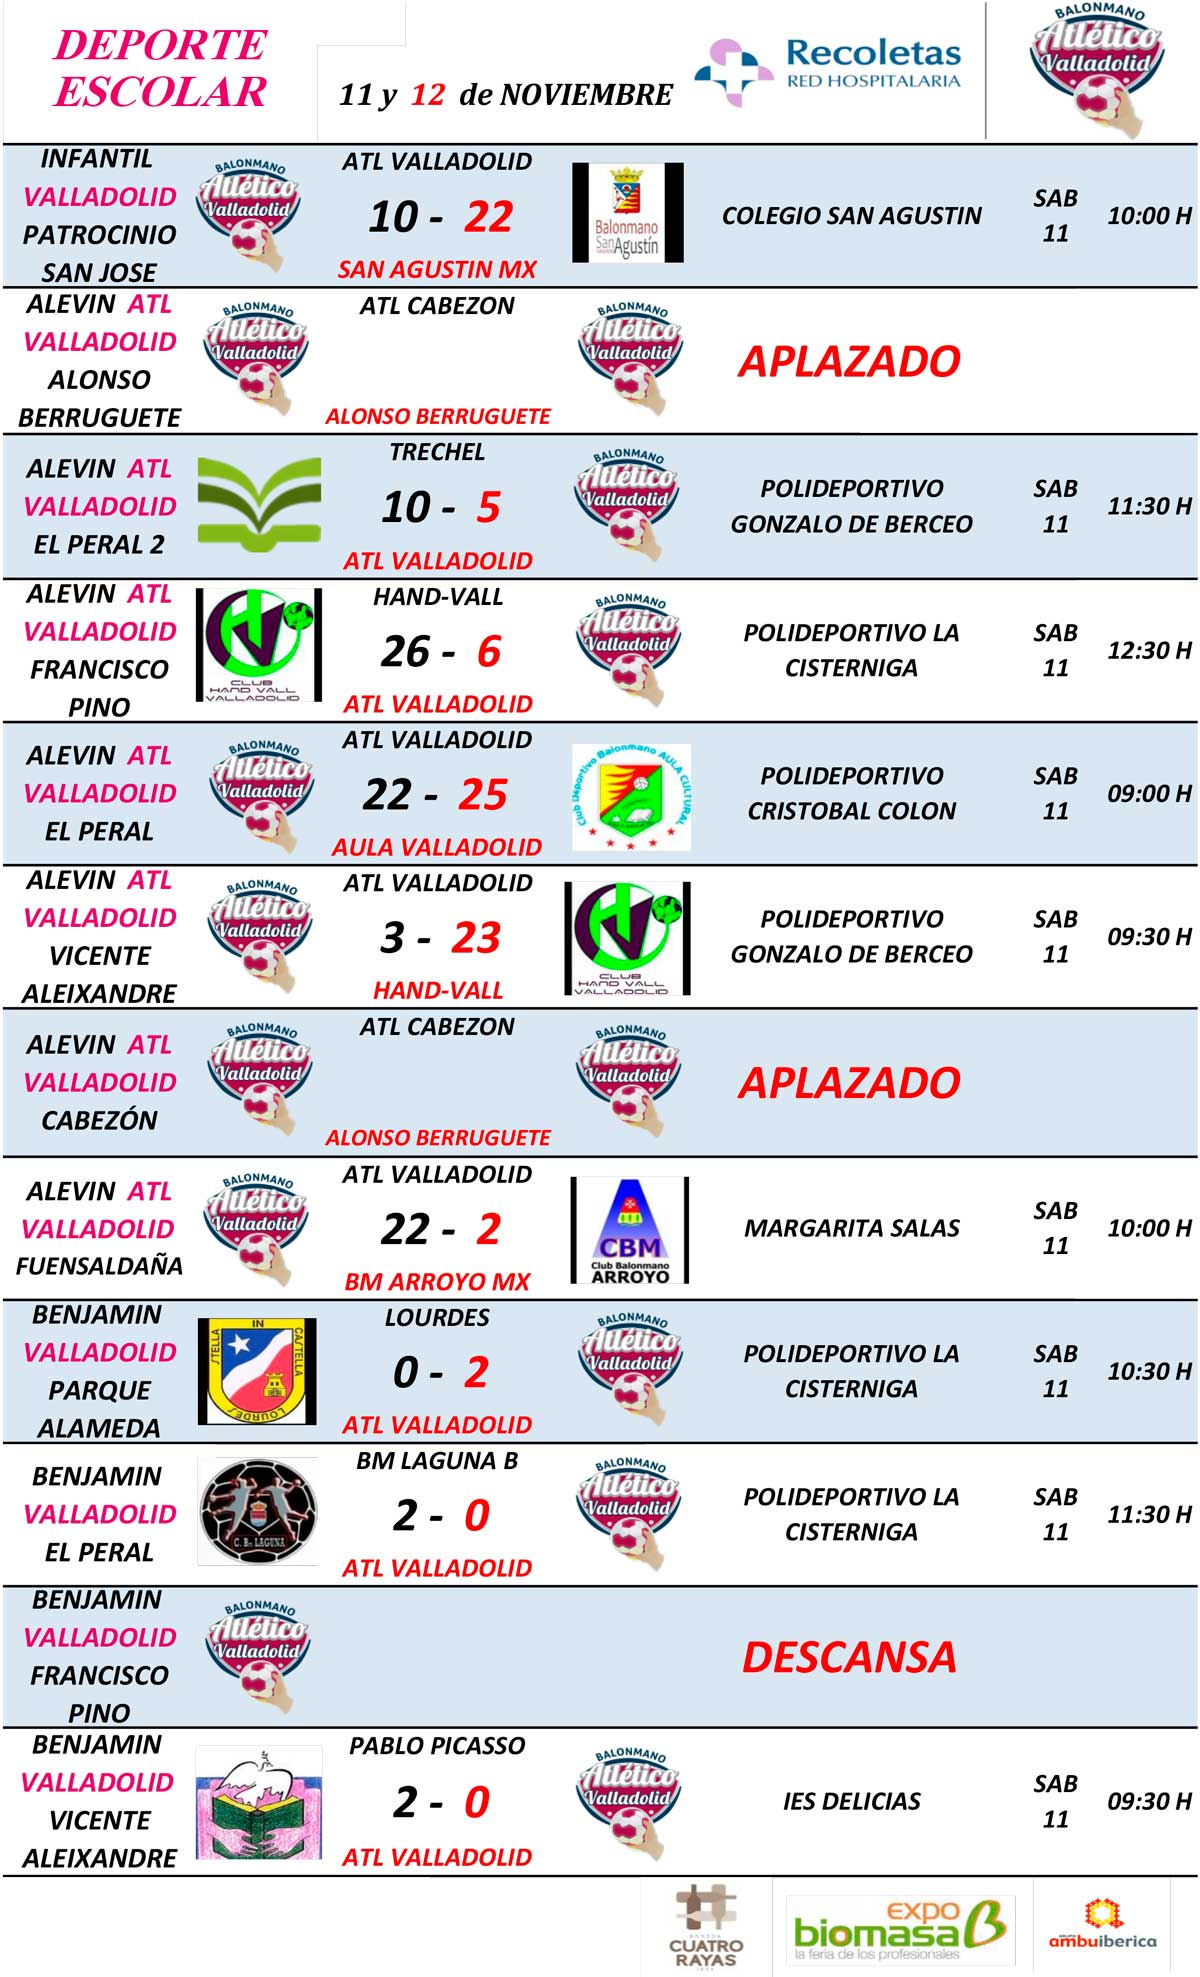 Resultados de cantera del Recoletas Atlético Valladolid (jornada 18 y 19 noviembre) | Galería 2 / 2